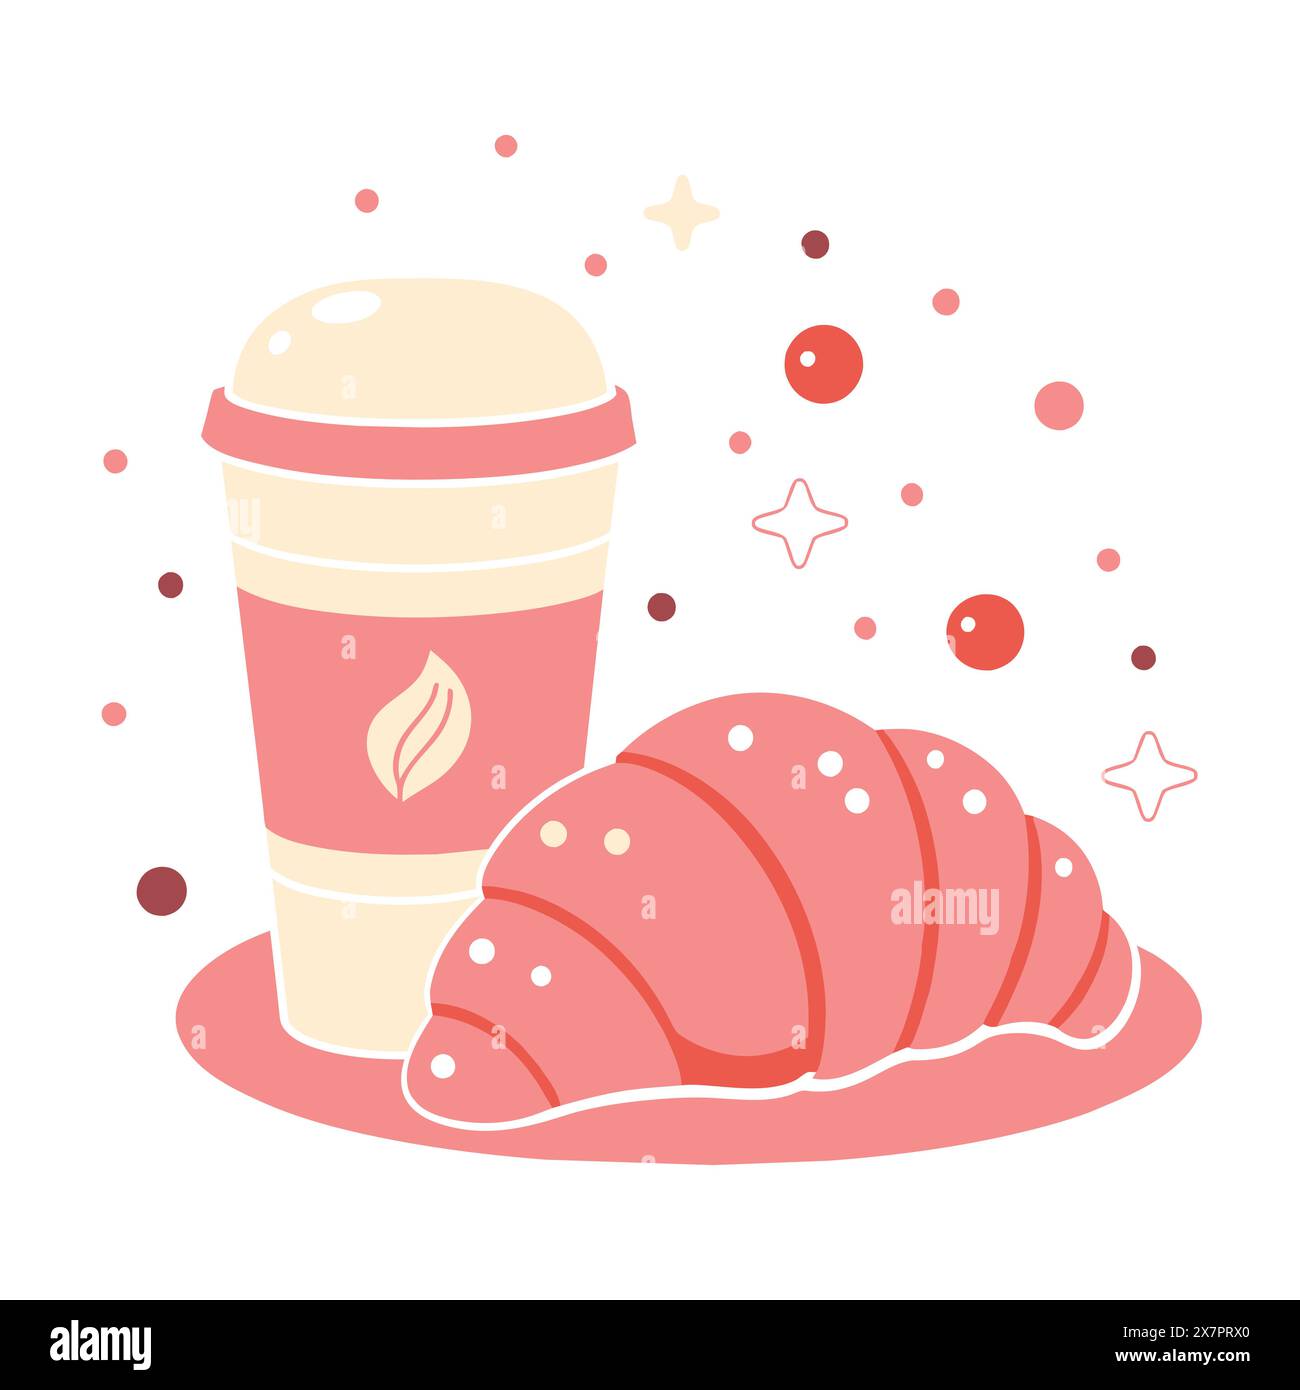 Tasse de thé au café et illustration vectorielle stylisée de croissant dans les couleurs rose et beige, isolé sur un fond blanc. Illustration vectorielle Illustration de Vecteur